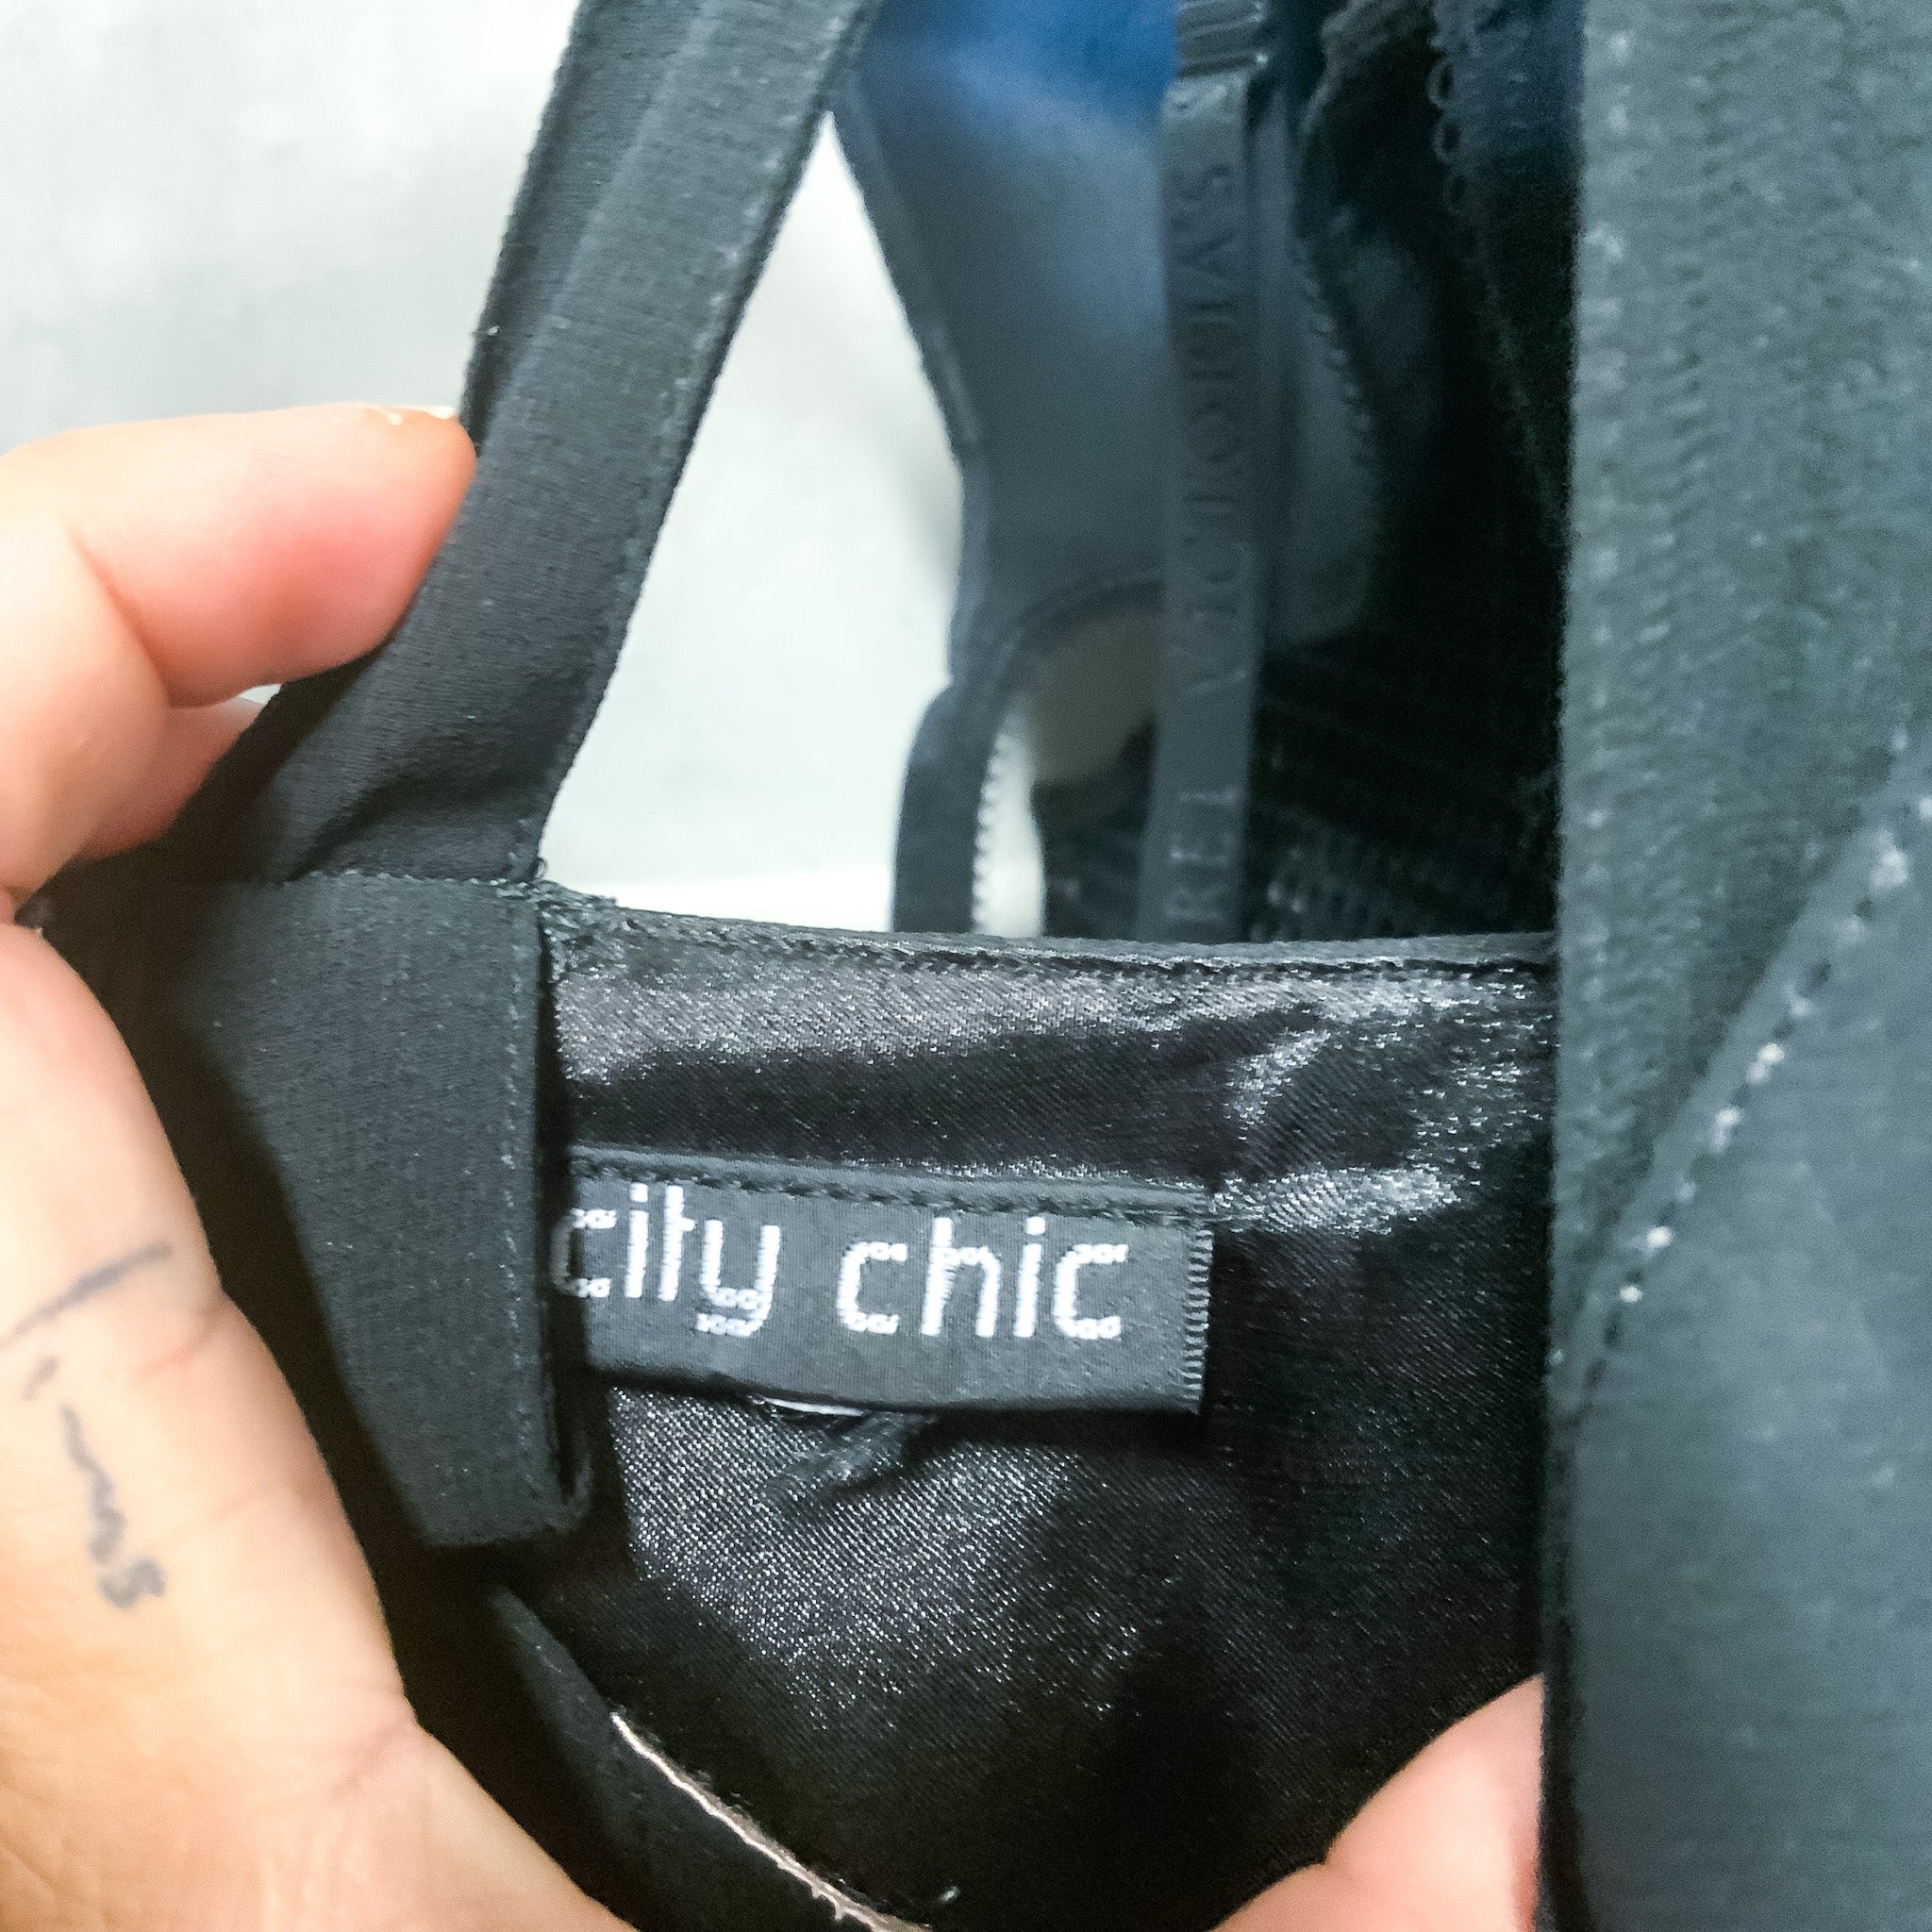 CITY CHIC Contrast Trim Lace Black Maxi Dress - Size AU16/18